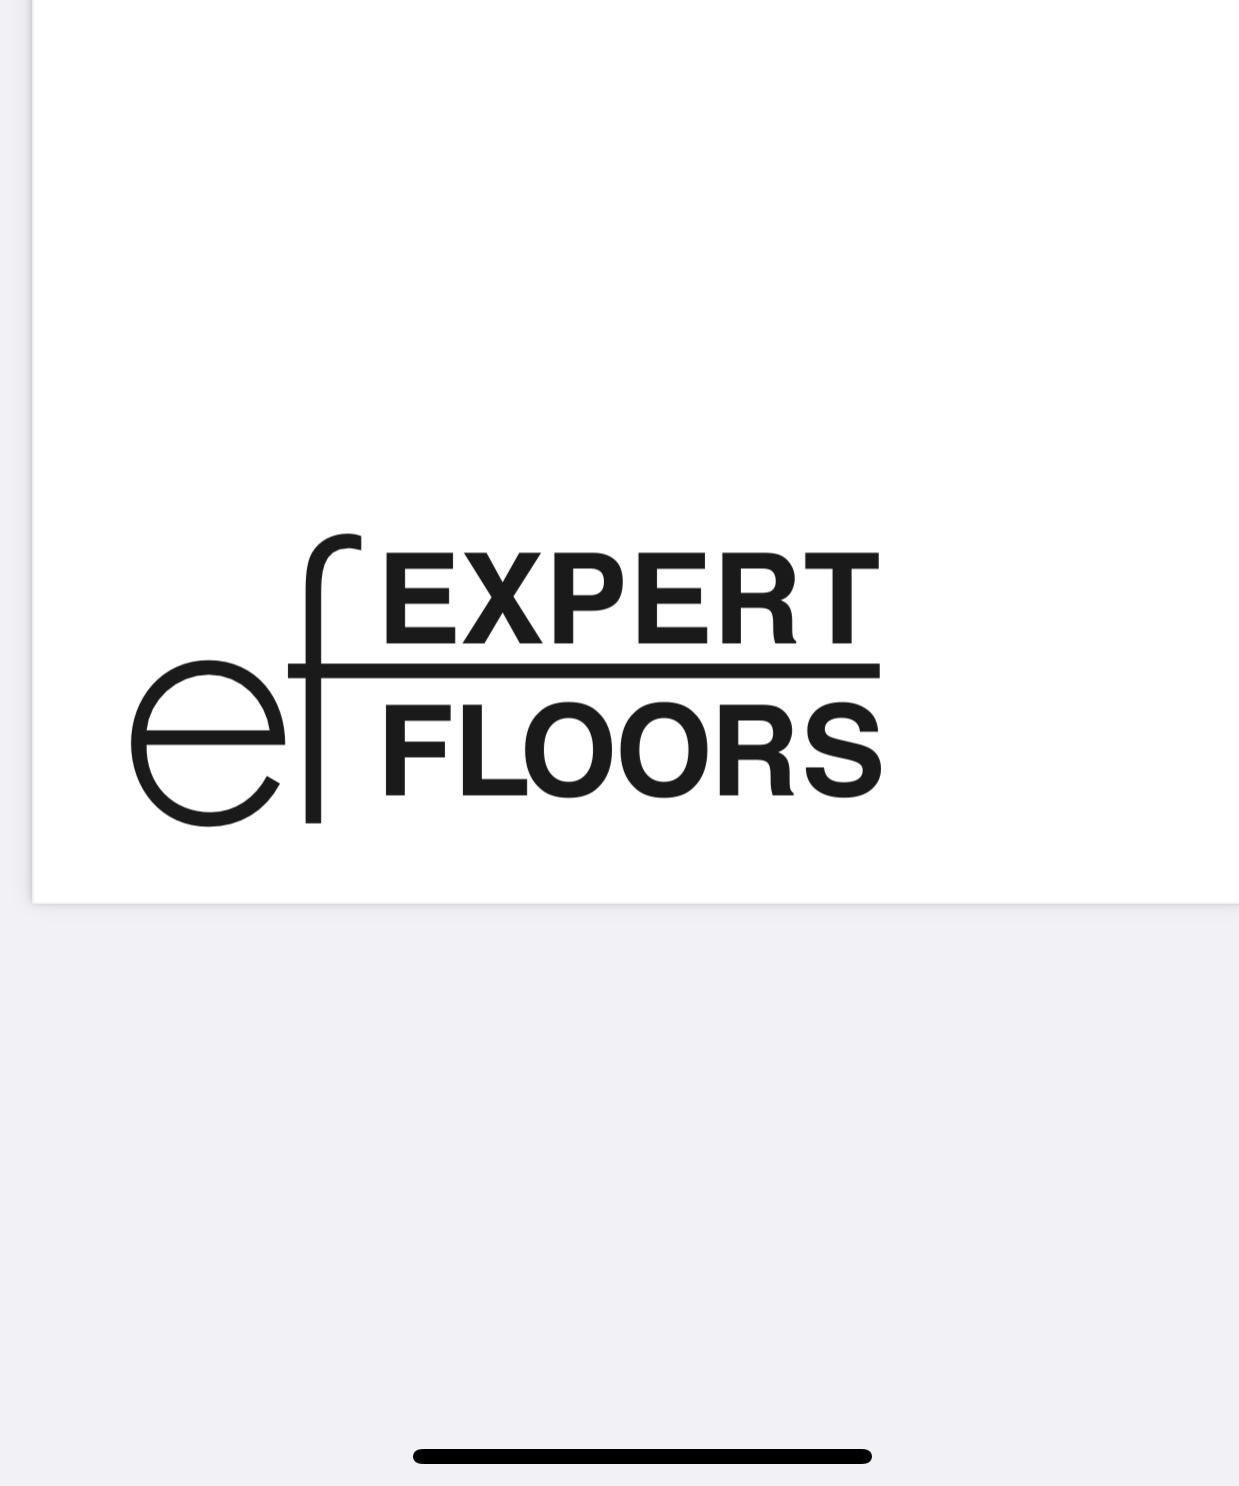 Expert Floors, LLC